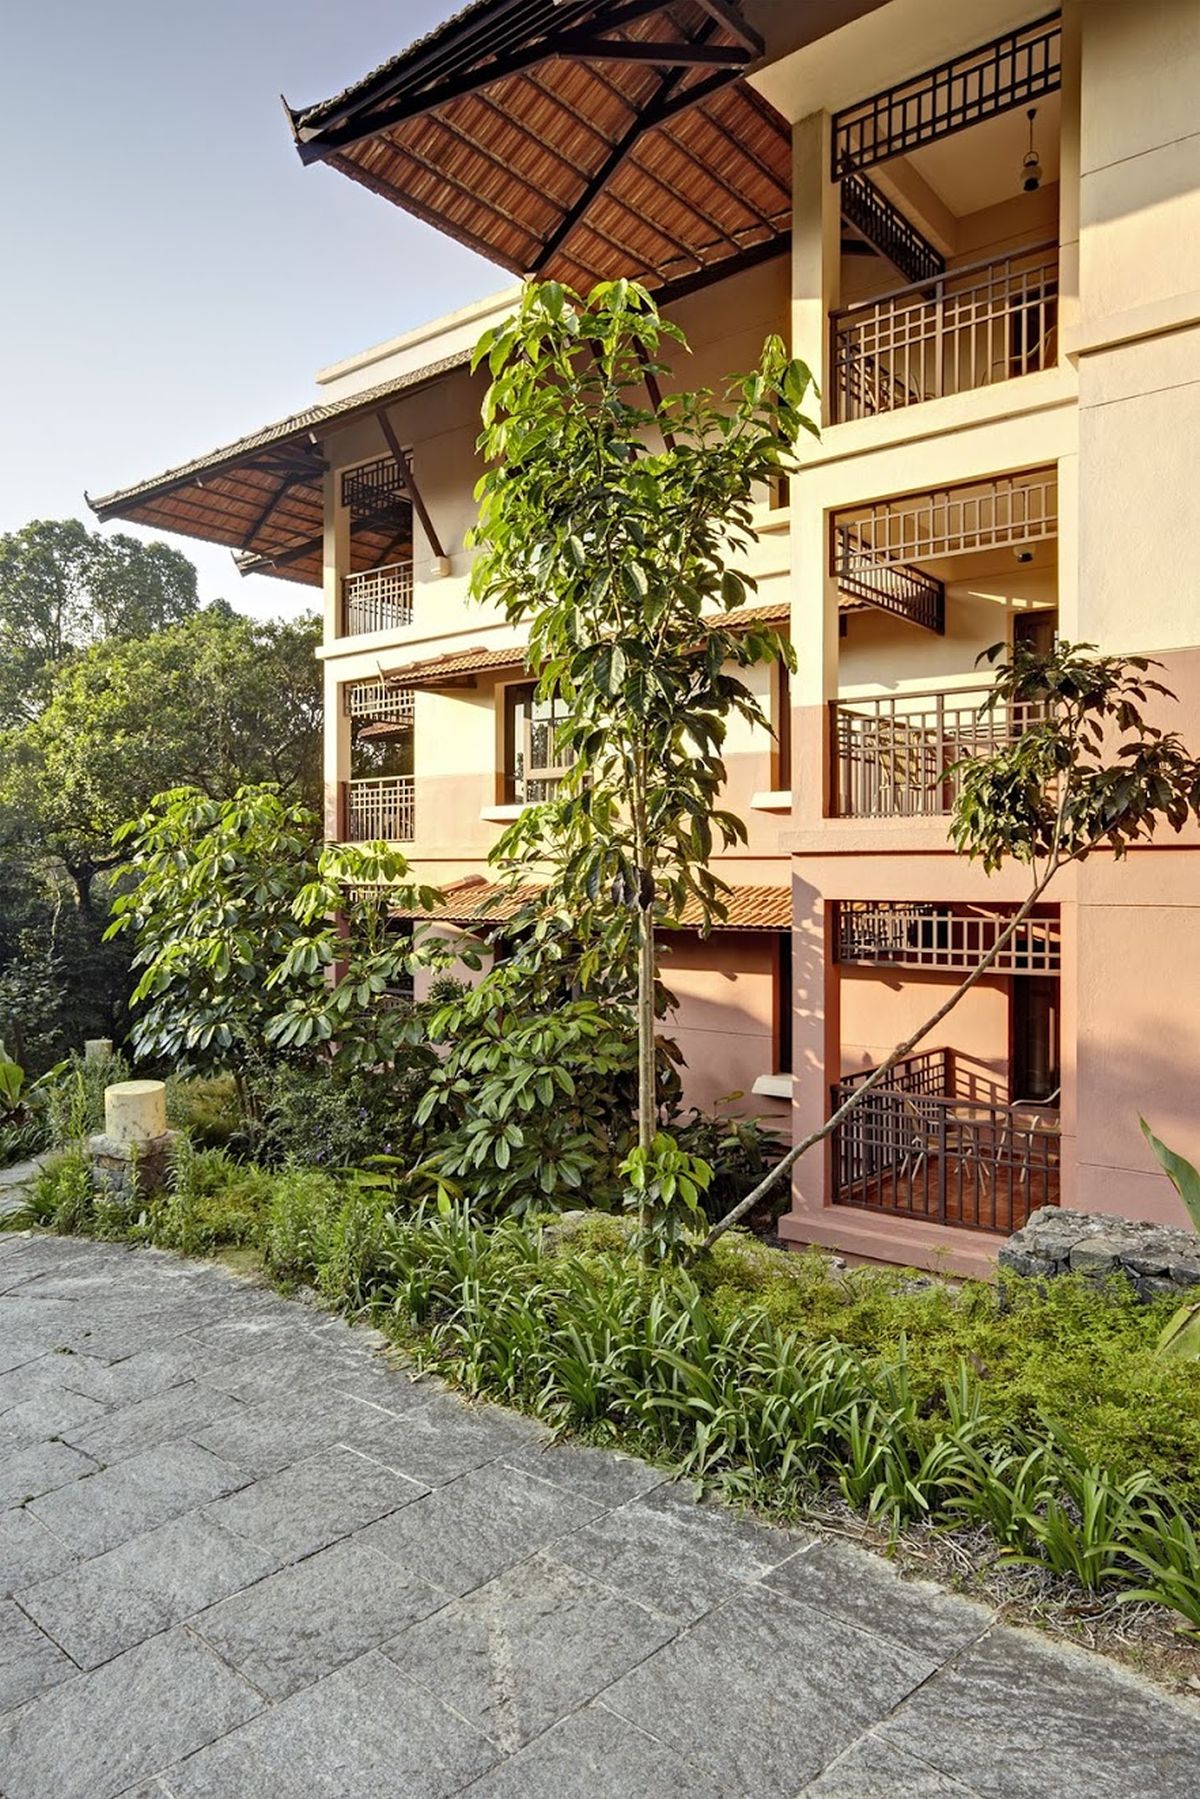 Club Mahindra Madikeri Resort, at Coorg, Karnataka - Merging Nature with the Living Habitat, by Rahul Kadri | IMK Architects 30